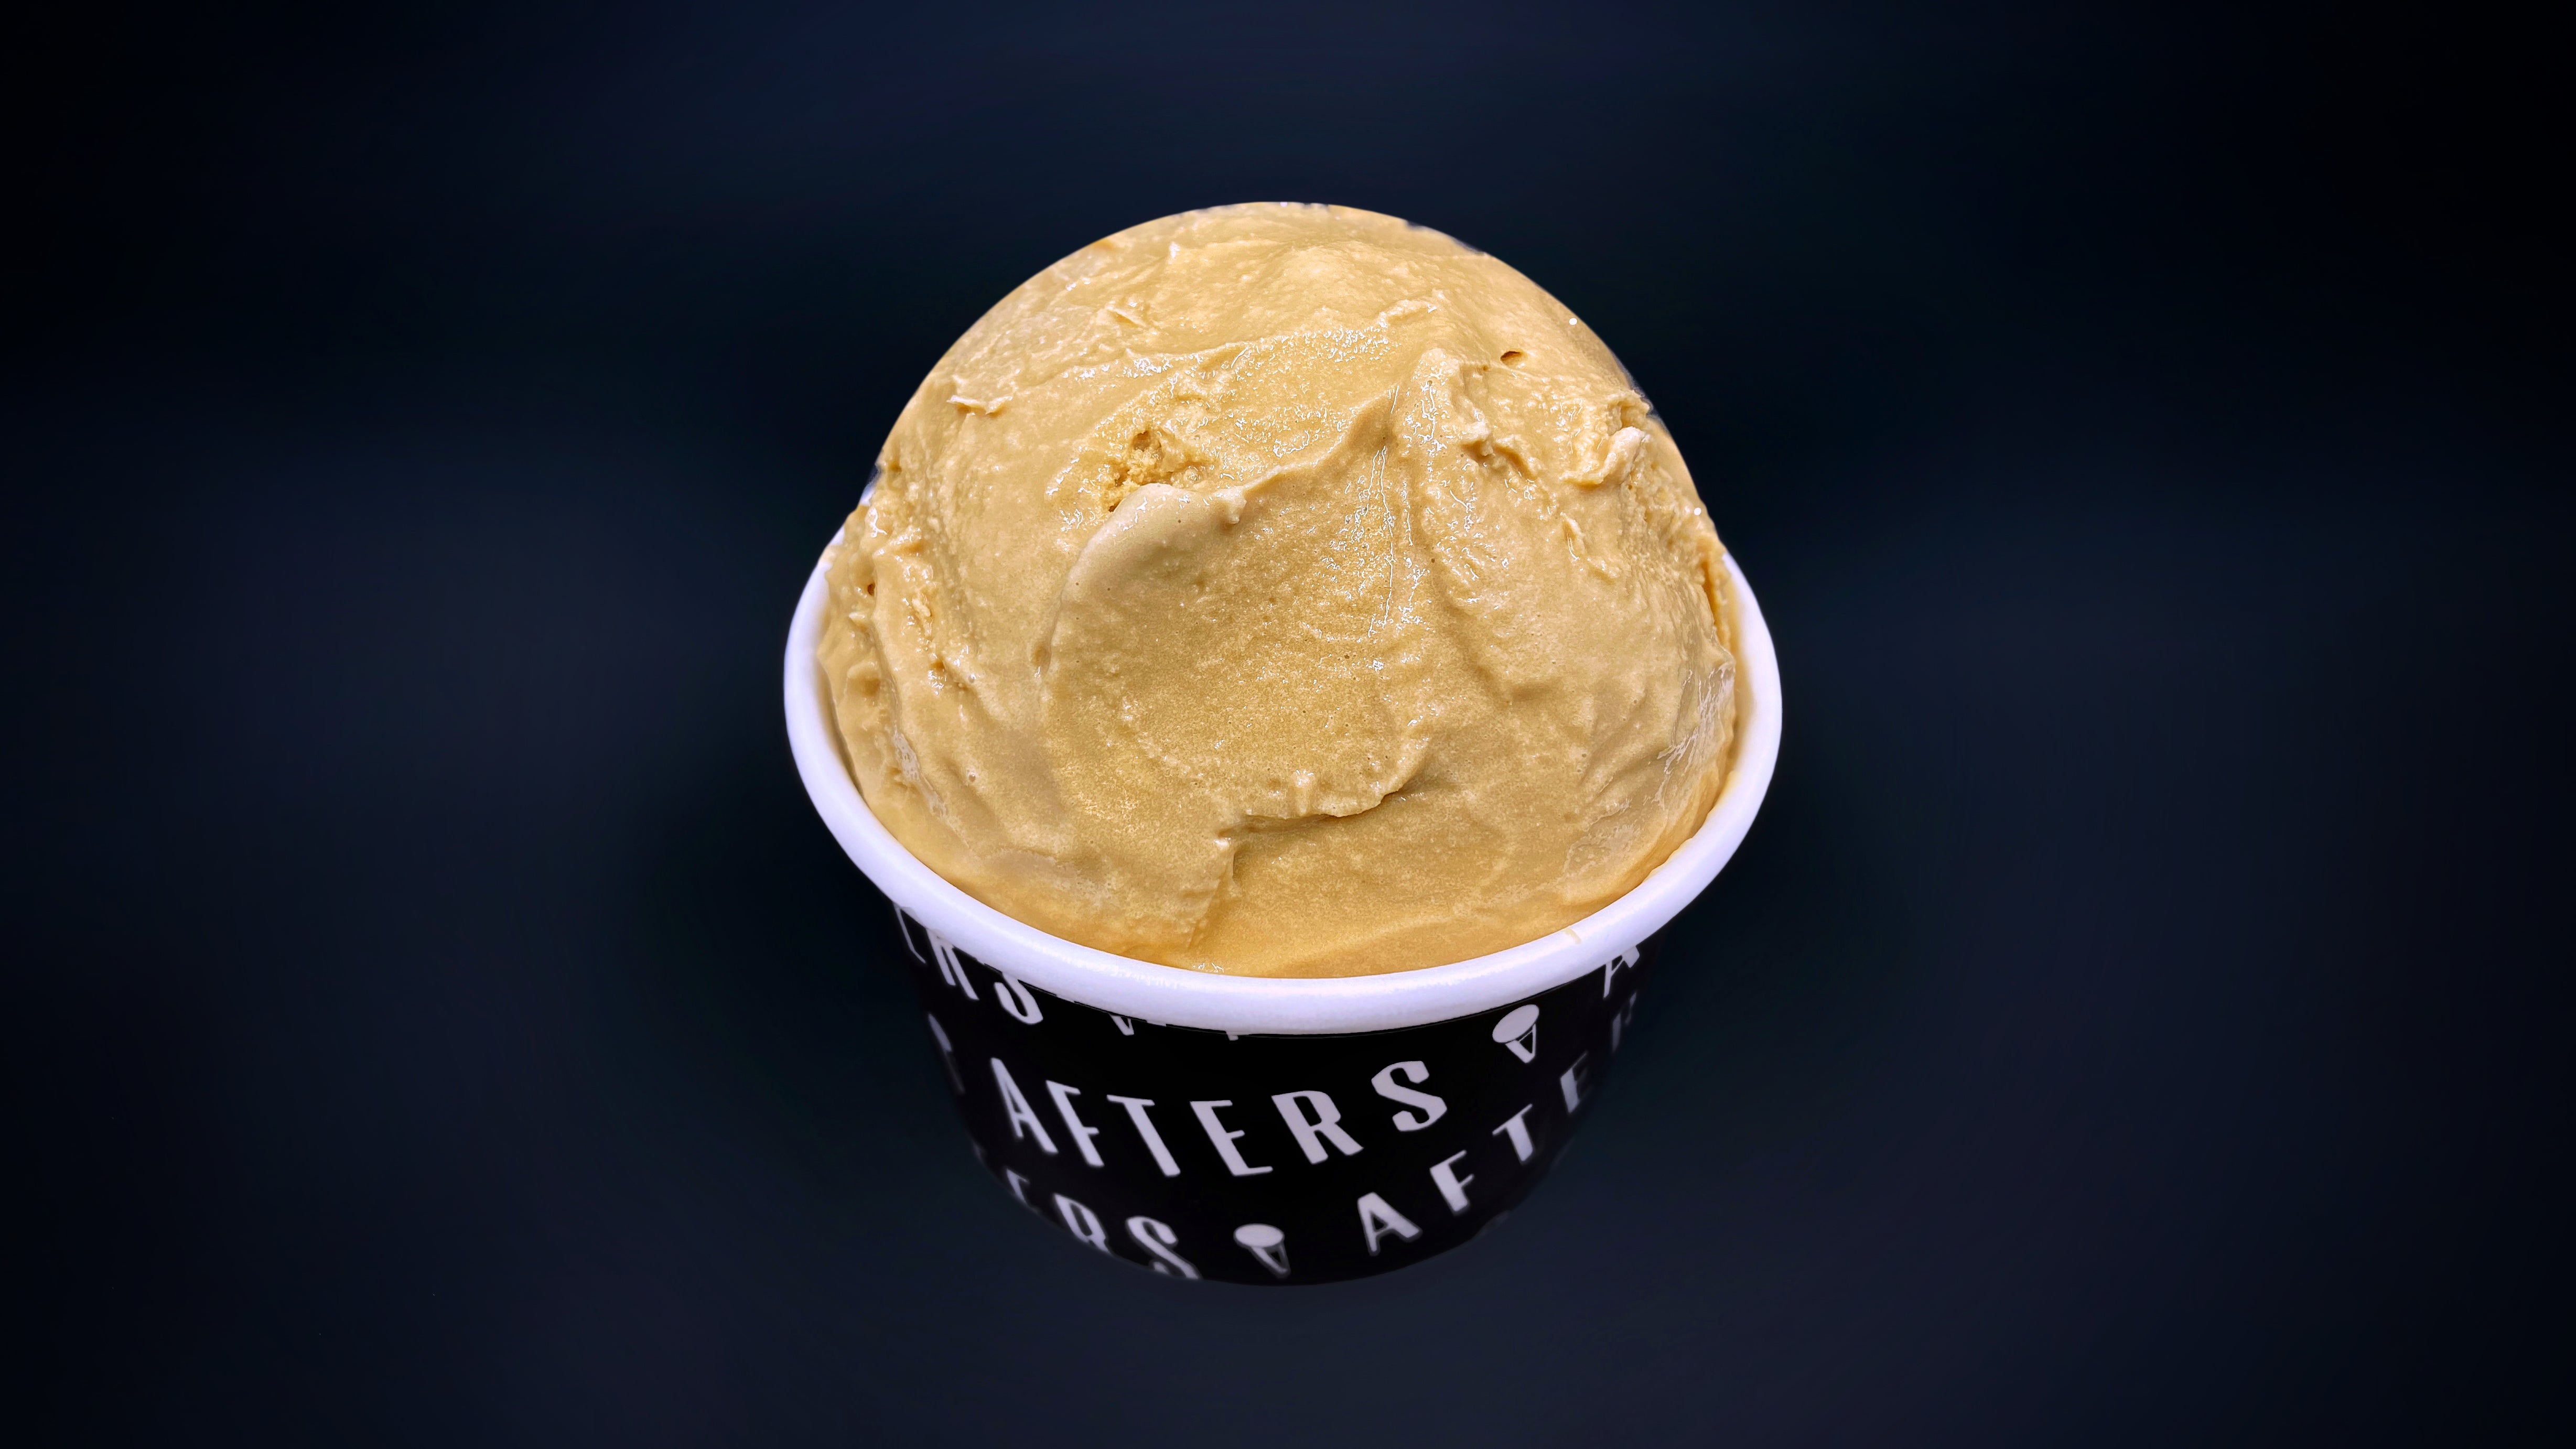 Afters Ice Cream - Kirbie's Cravings